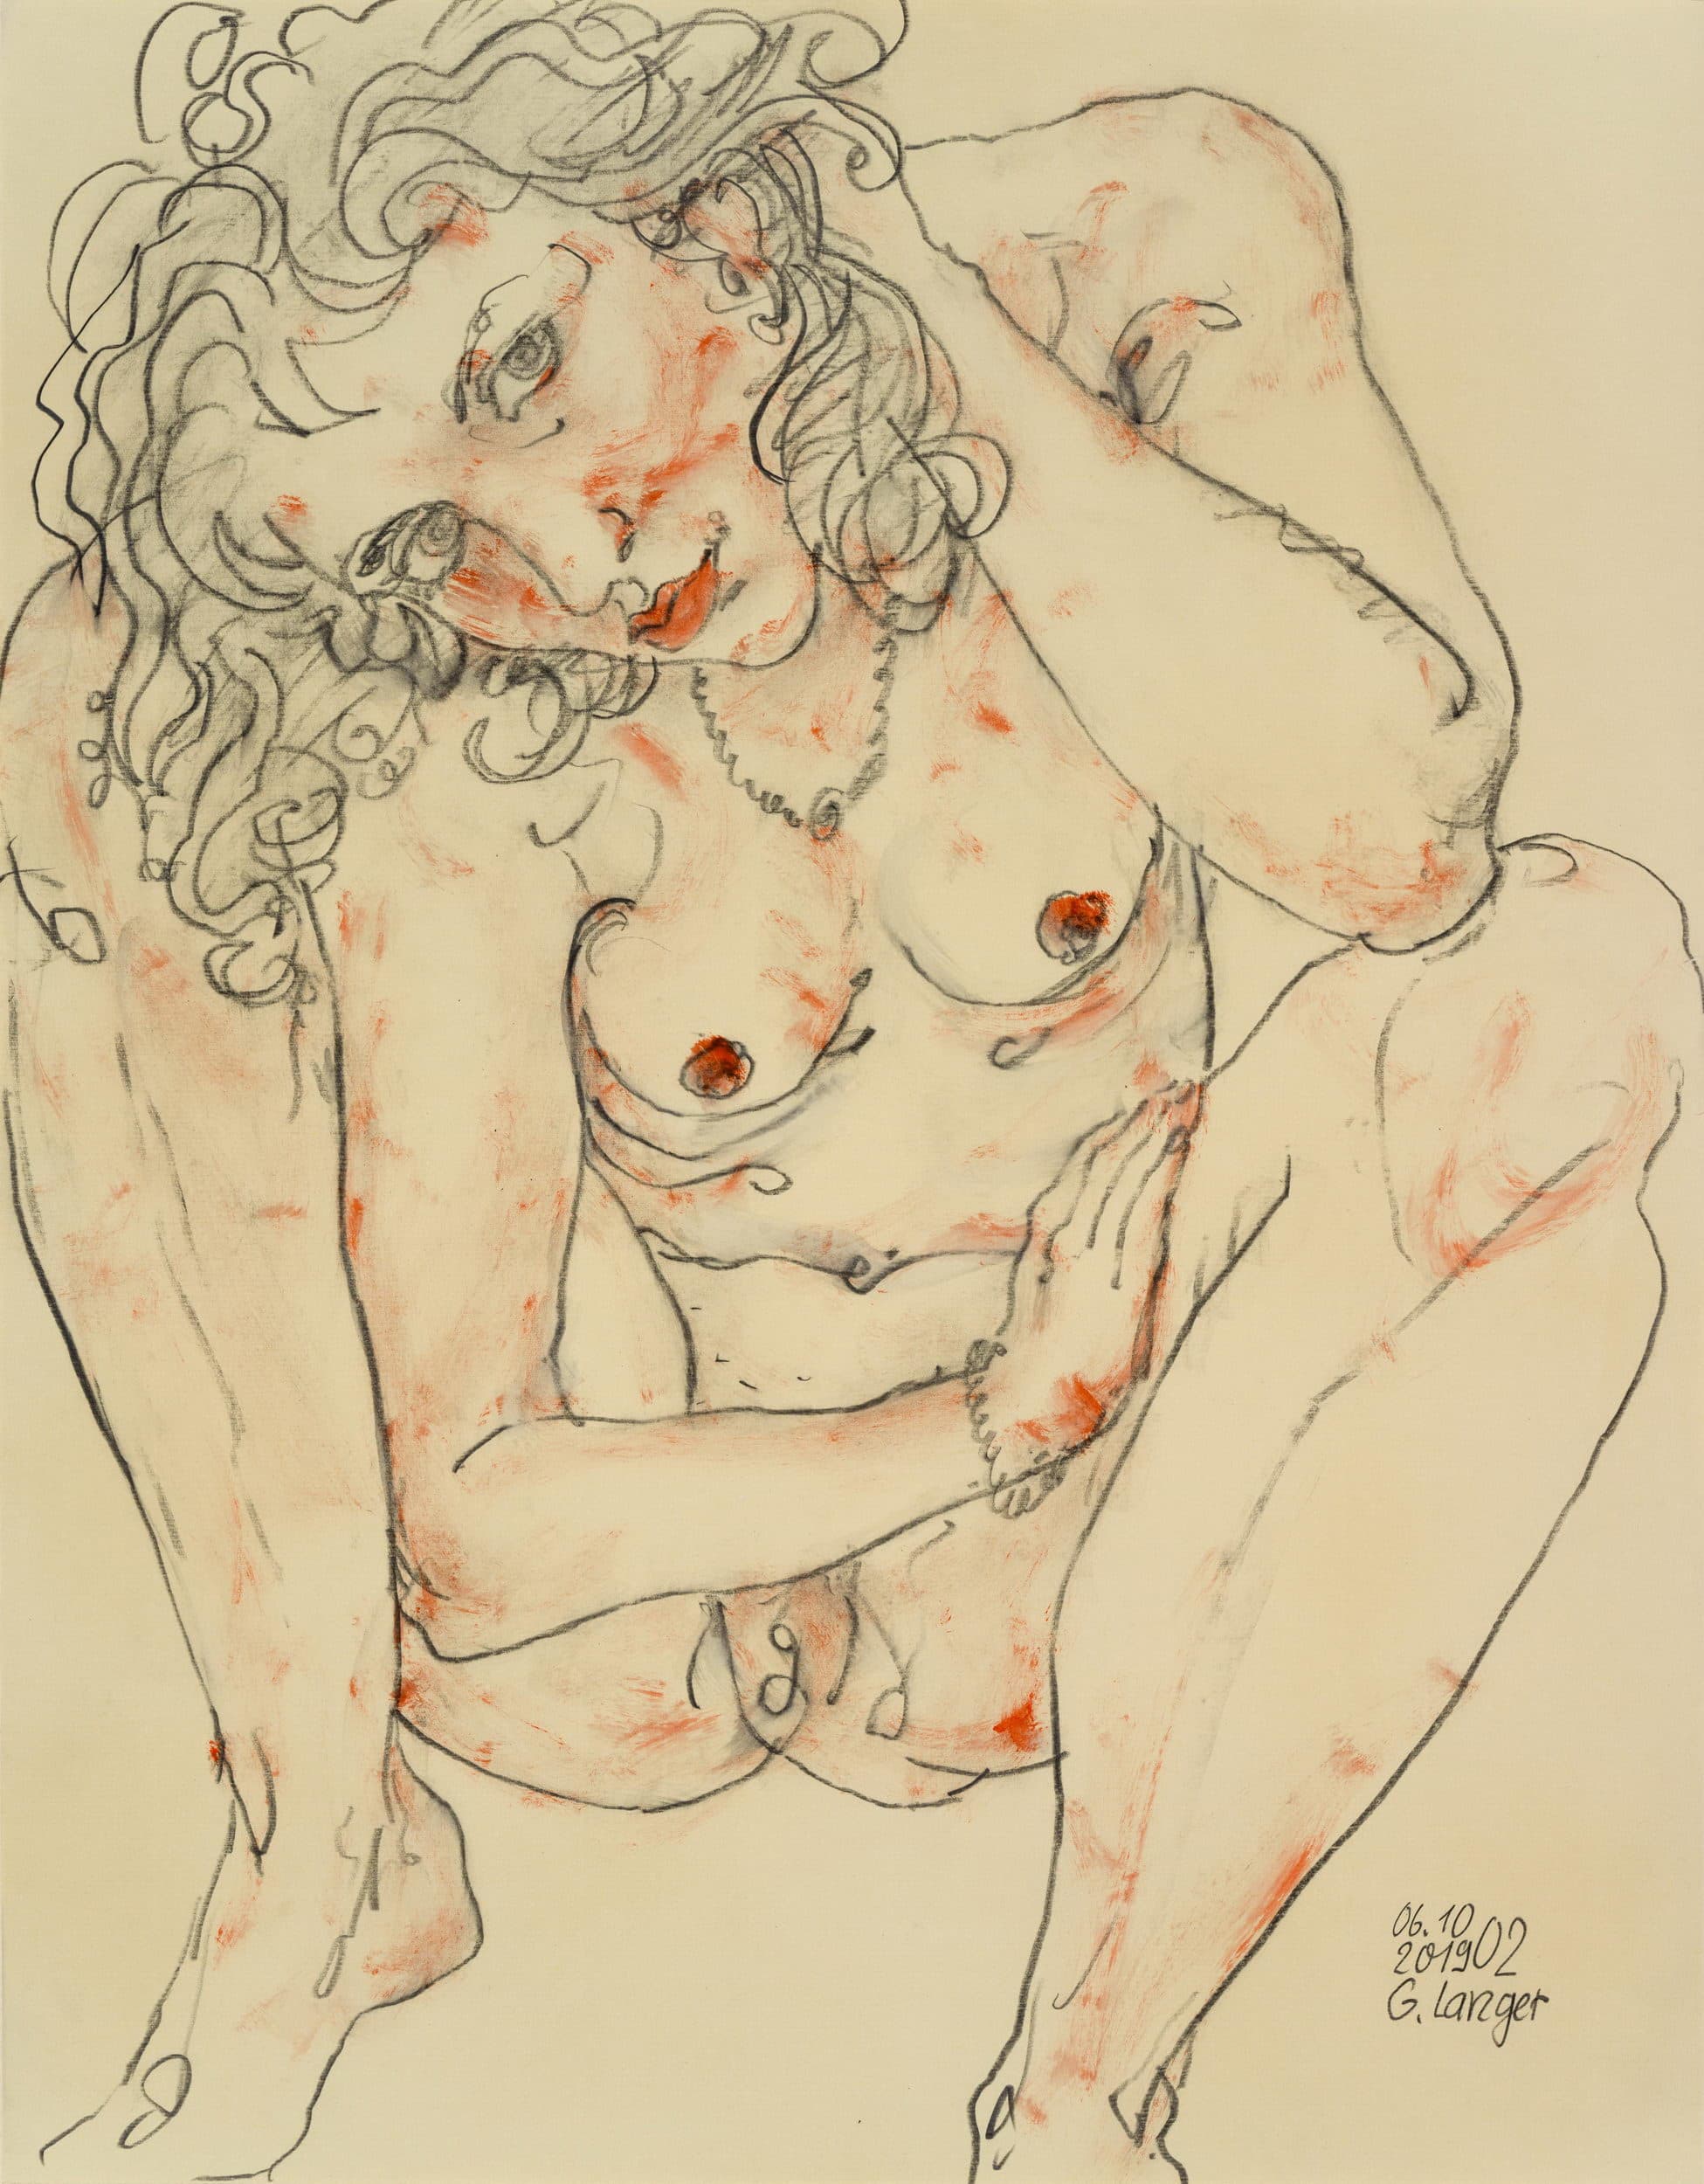 Gunter Langer, 2019, Zeichnung, 63 x 49 cm